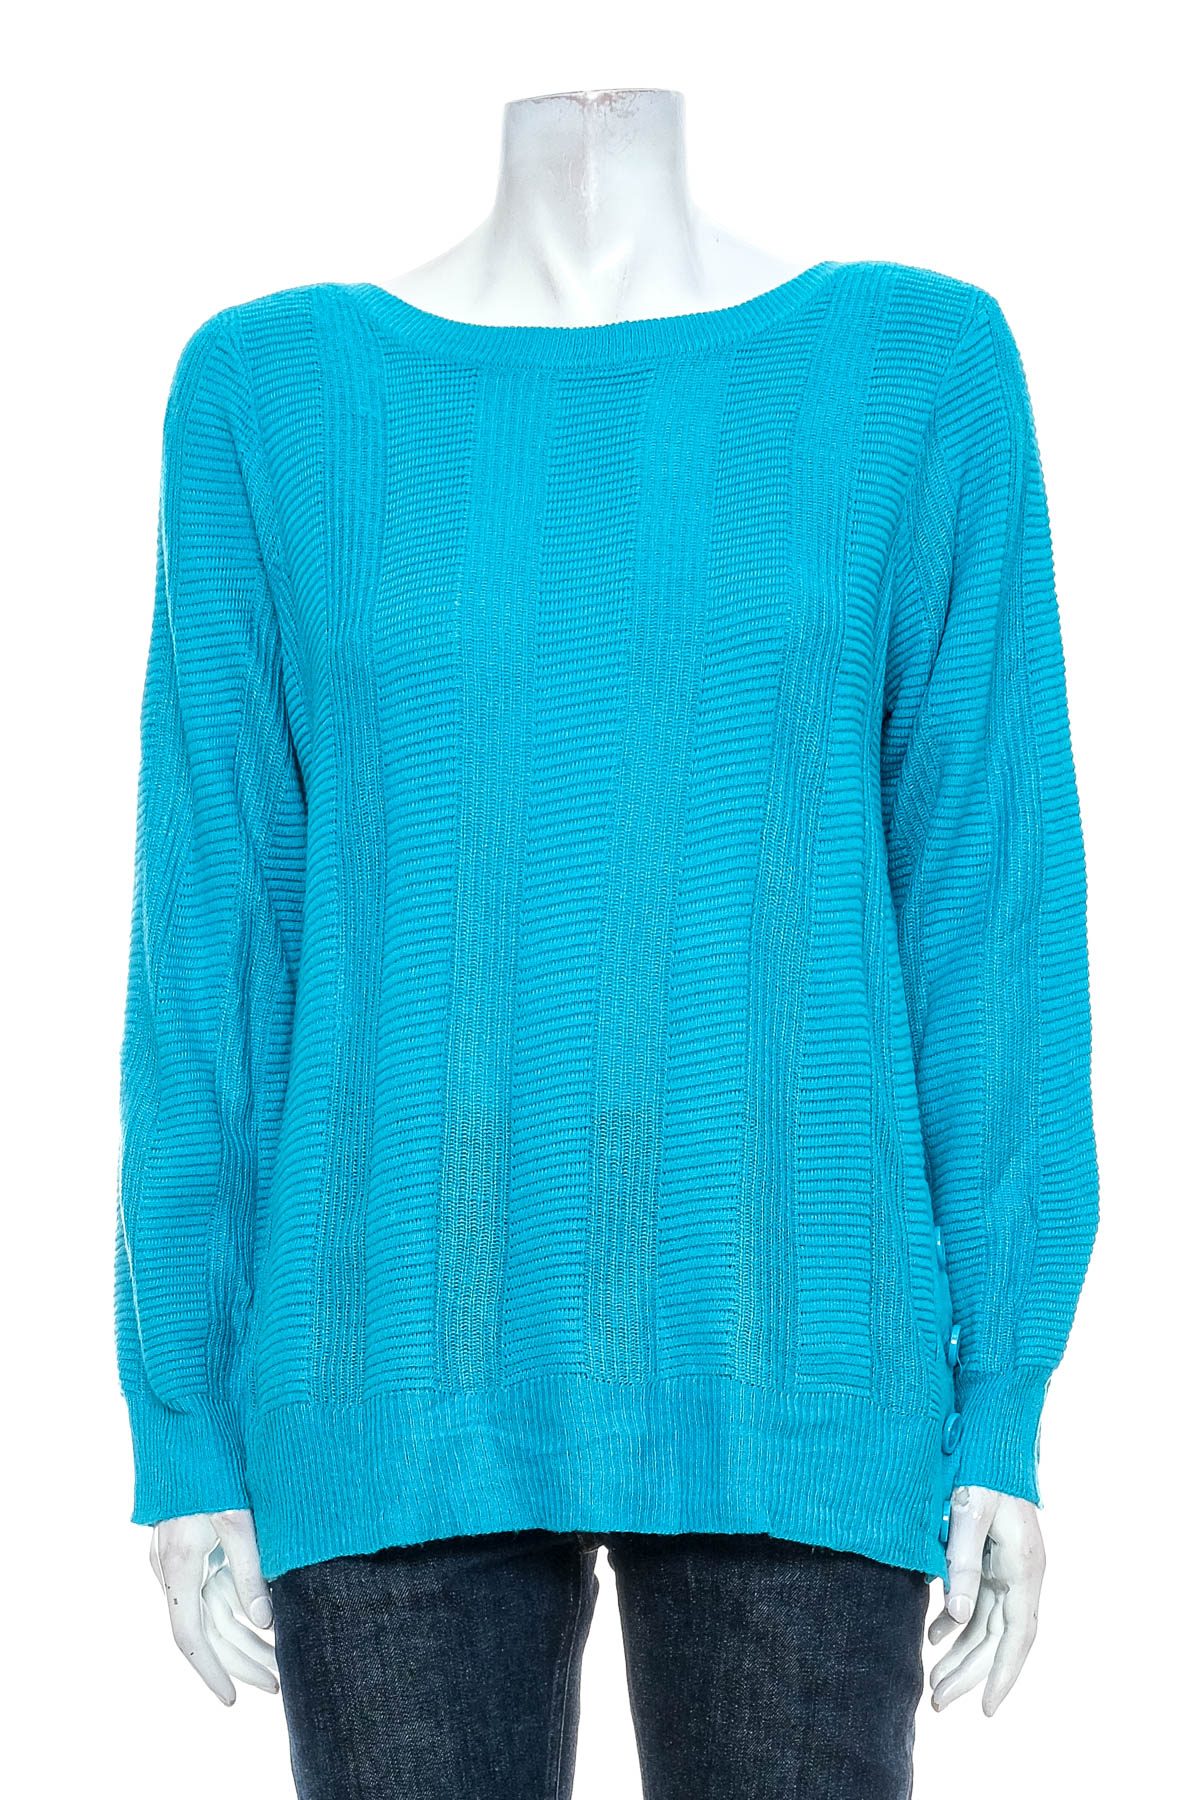 Women's sweater - W.LANE - 0